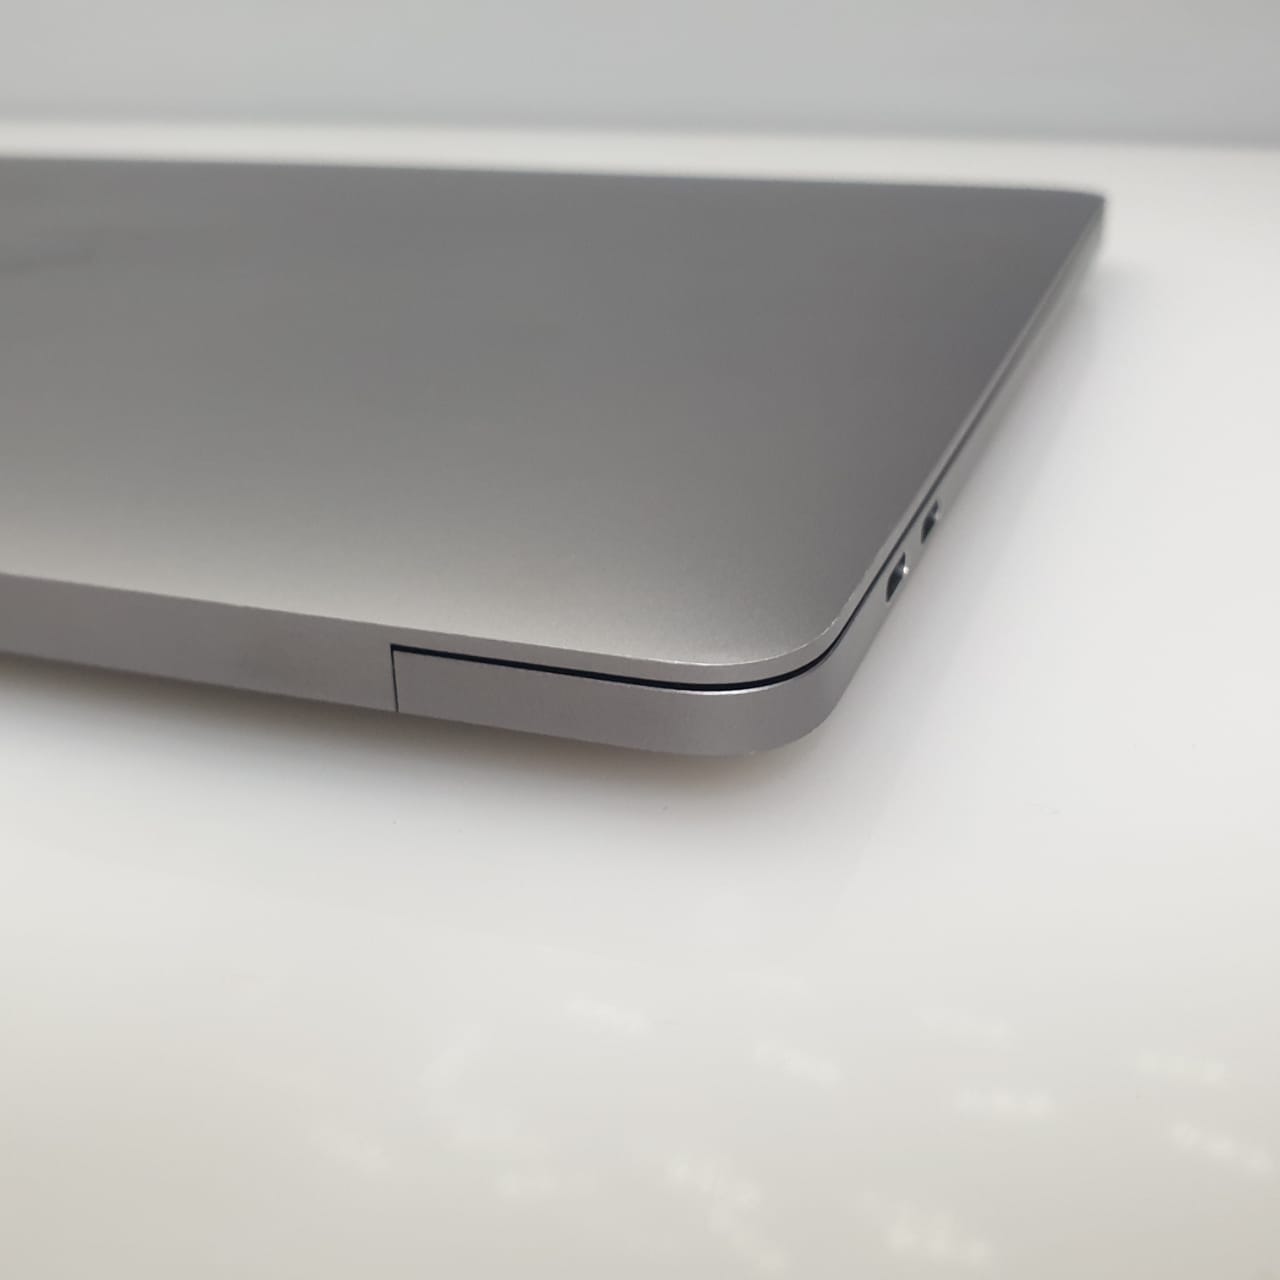 MacBook Pro 13-Inch 